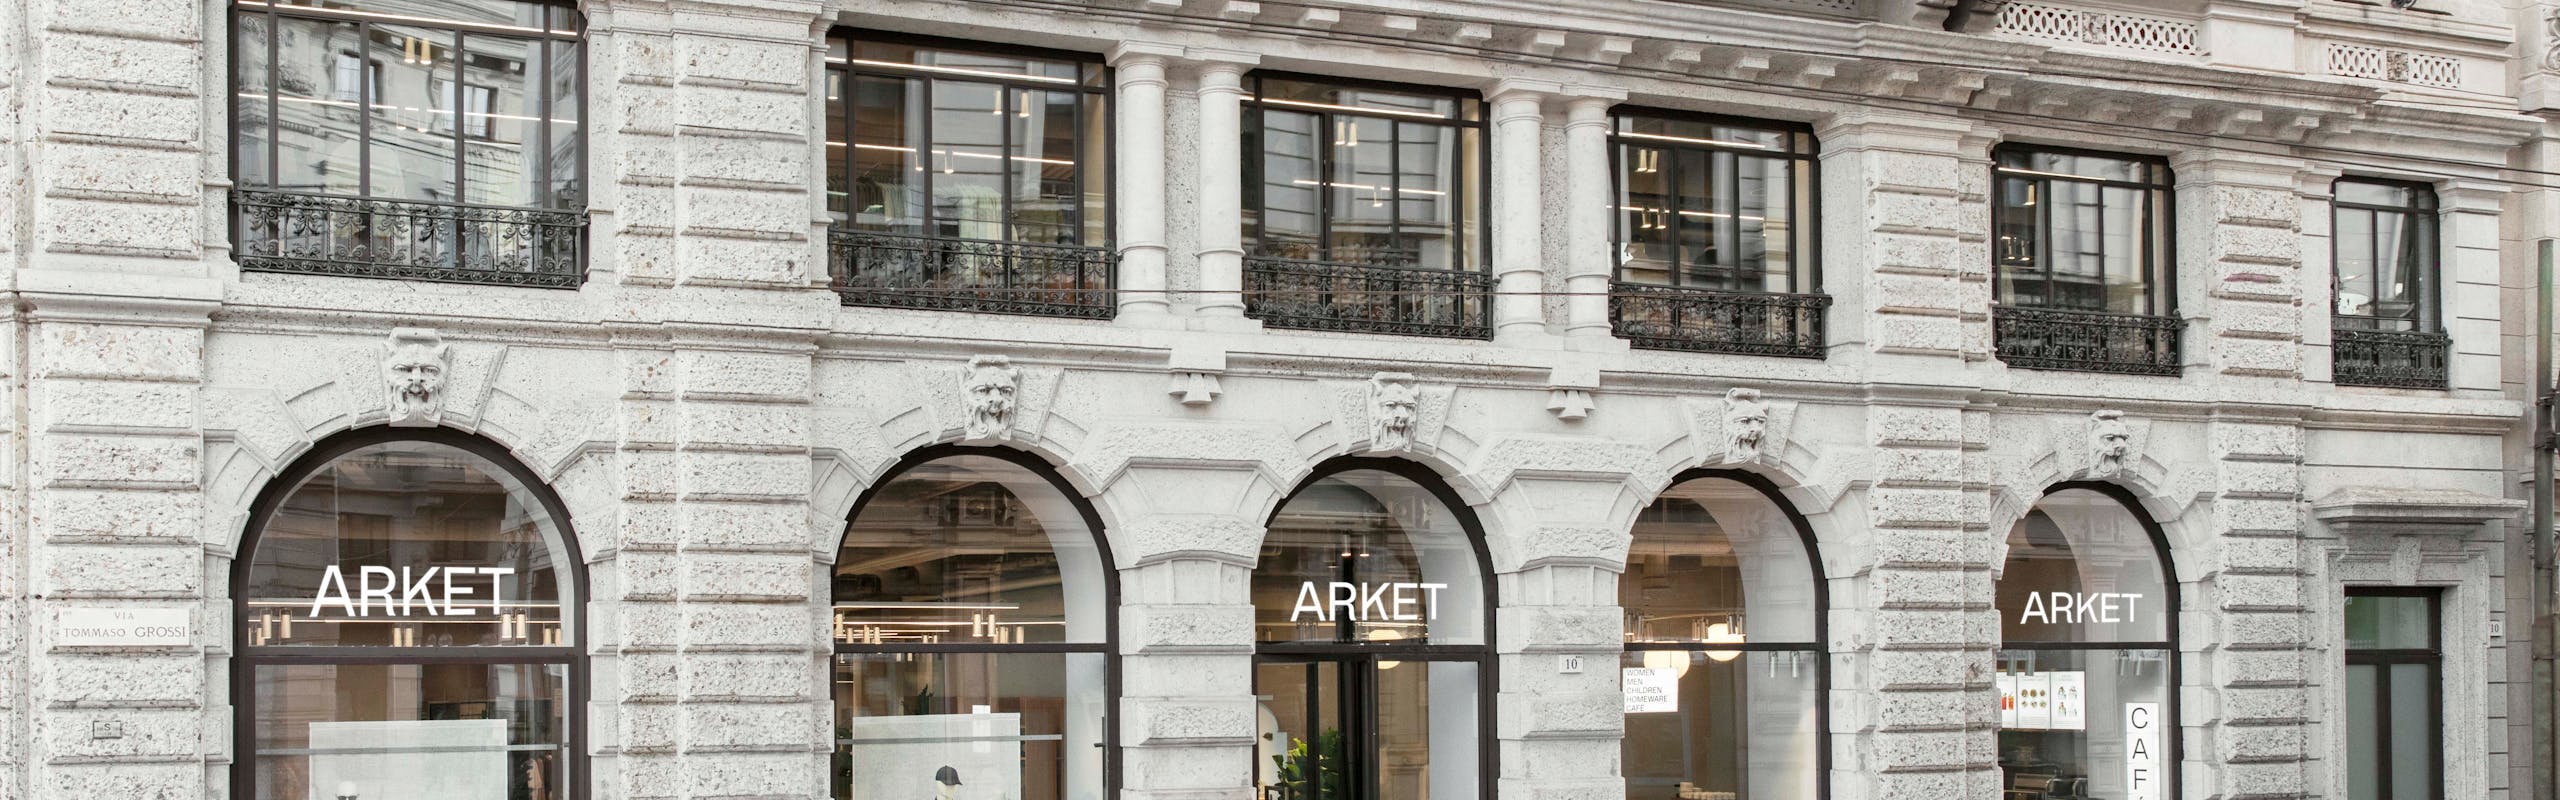 Arket il nuovo negozio a Milano (Courtesy of Arket)